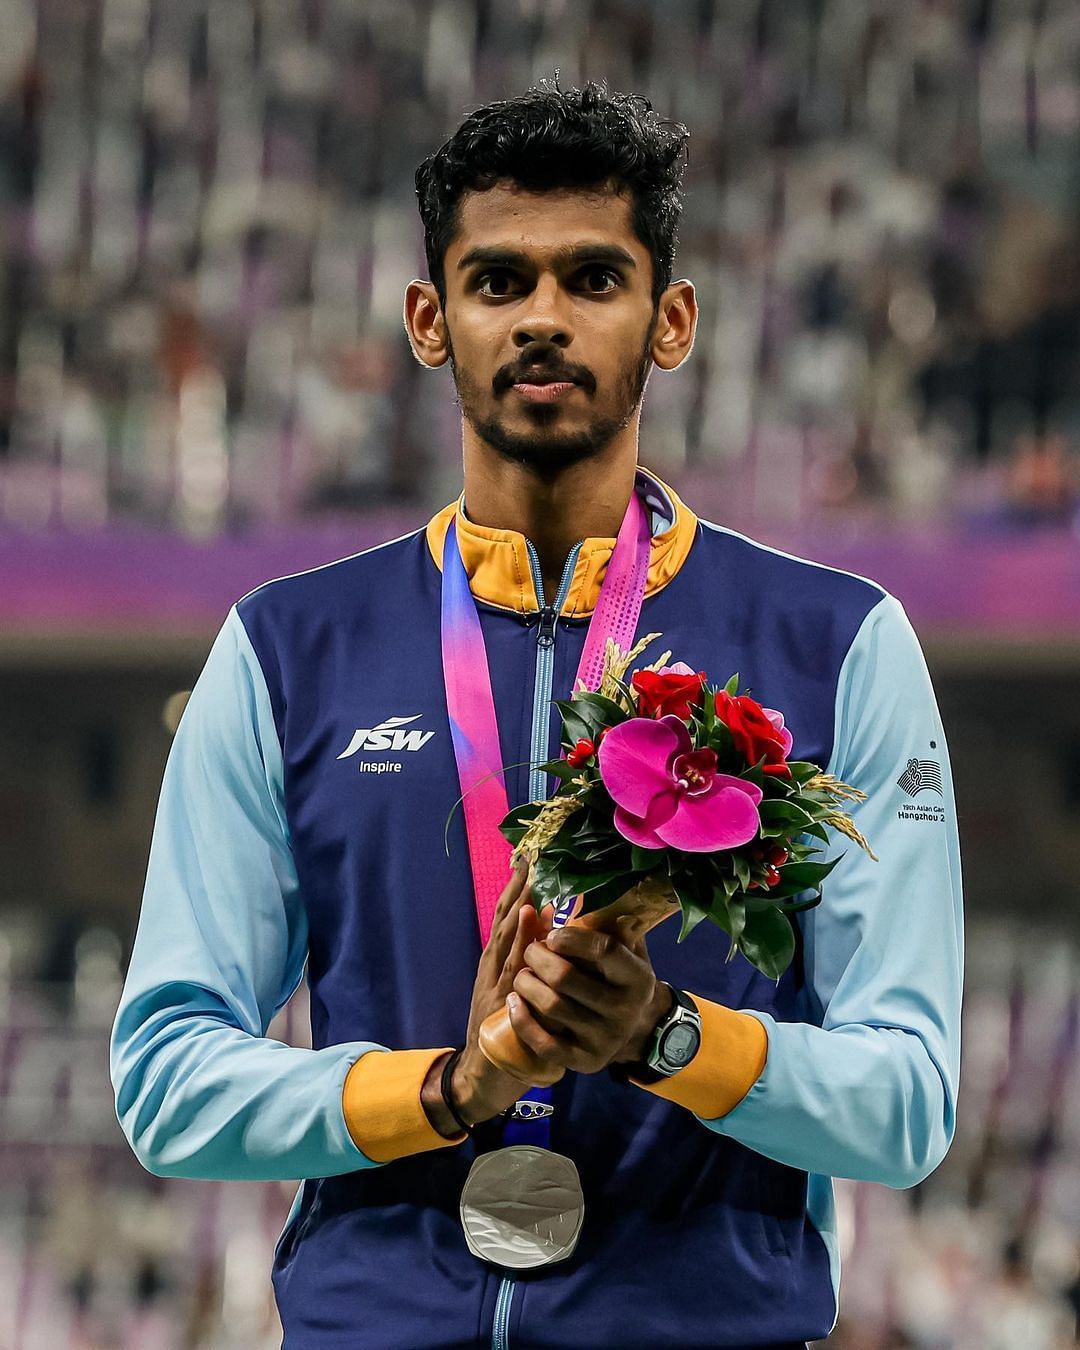 Murali Sreeshankar at the Asian Games, (Image Courtesy- Murali Sreeshankar via Instagram)